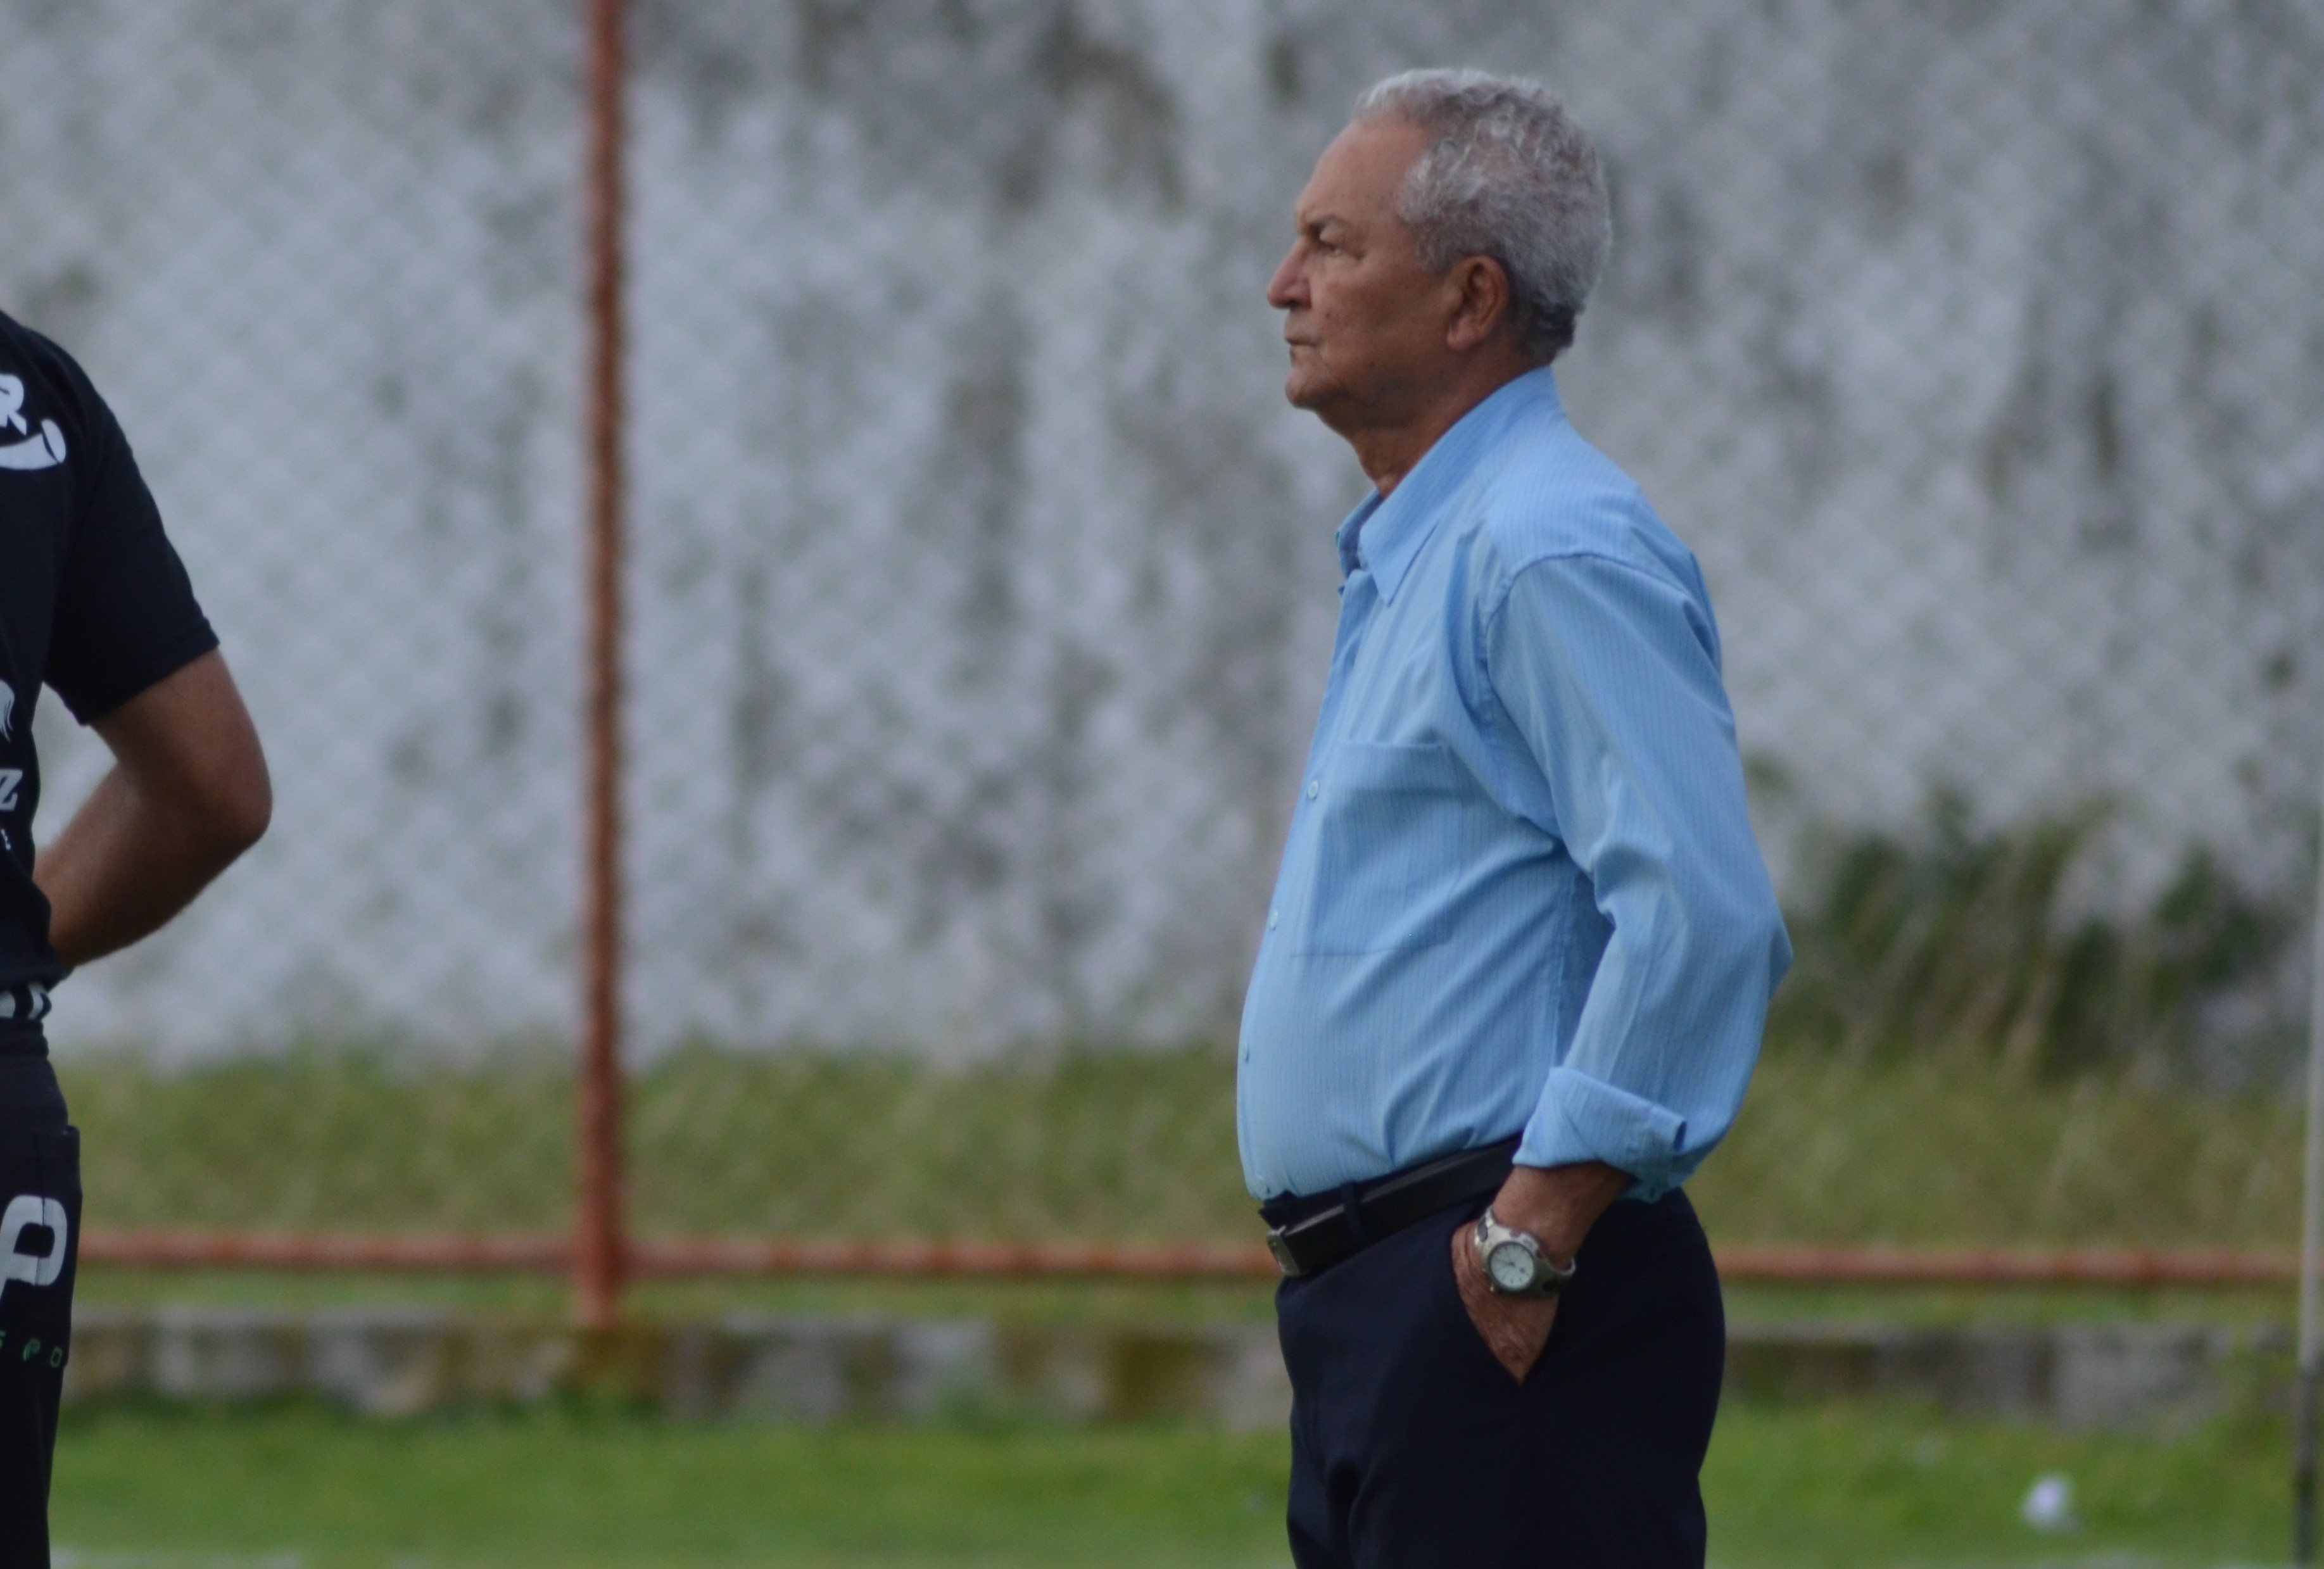 Corinthians chega em Cuiabá sob protesto da torcida; “vamos jogar bola” –  Só Notícias